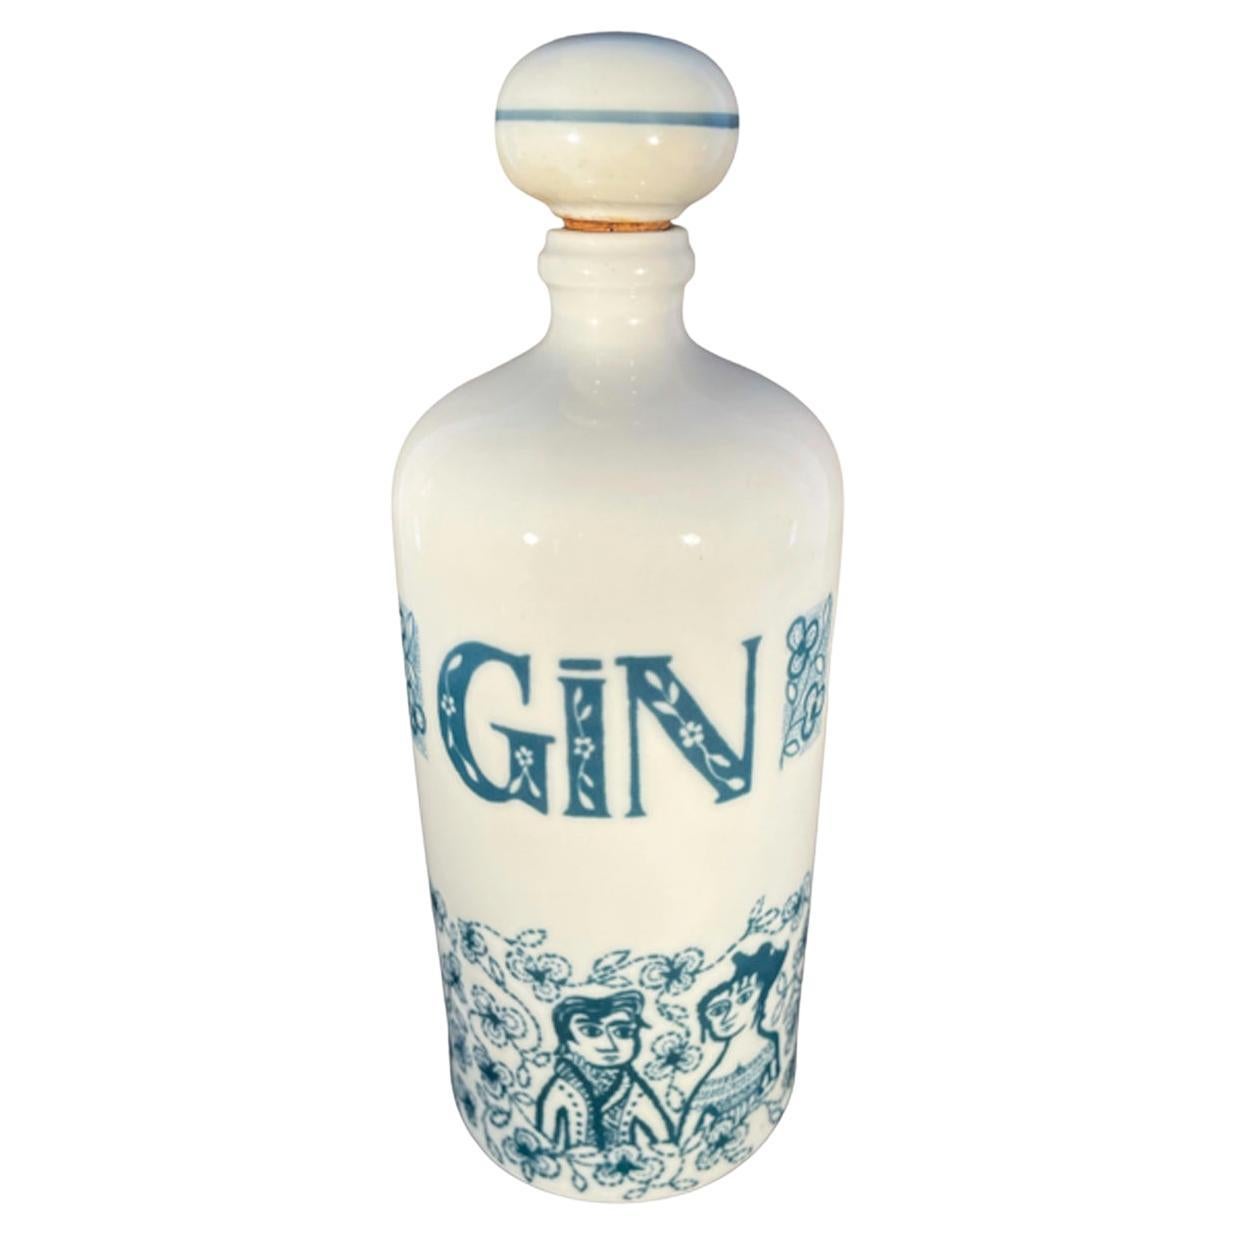 Vintage-Dekanter „Gin“ aus Altenkunstadt-Porzellan, hergestellt in Westdeutschland